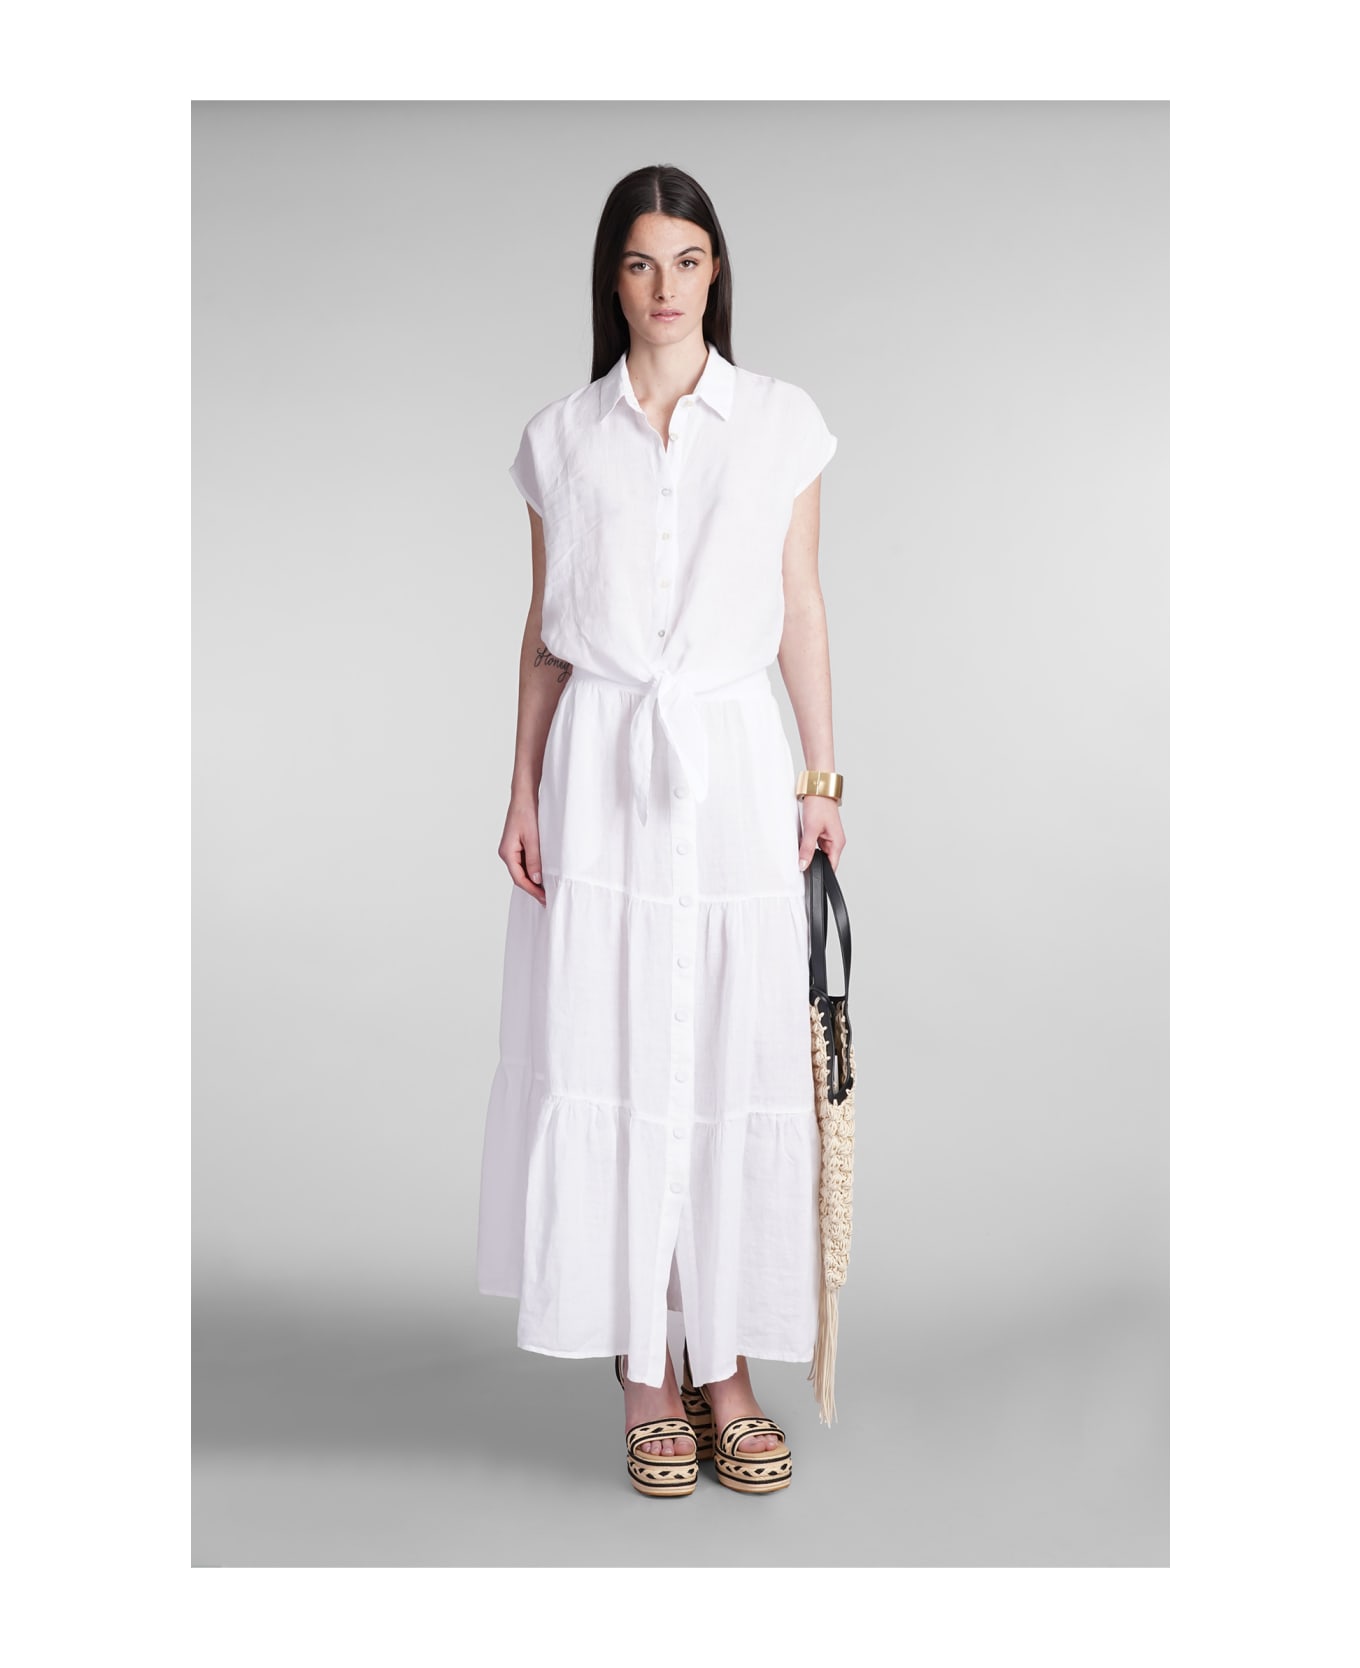 120% Lino Skirt In White Linen - white